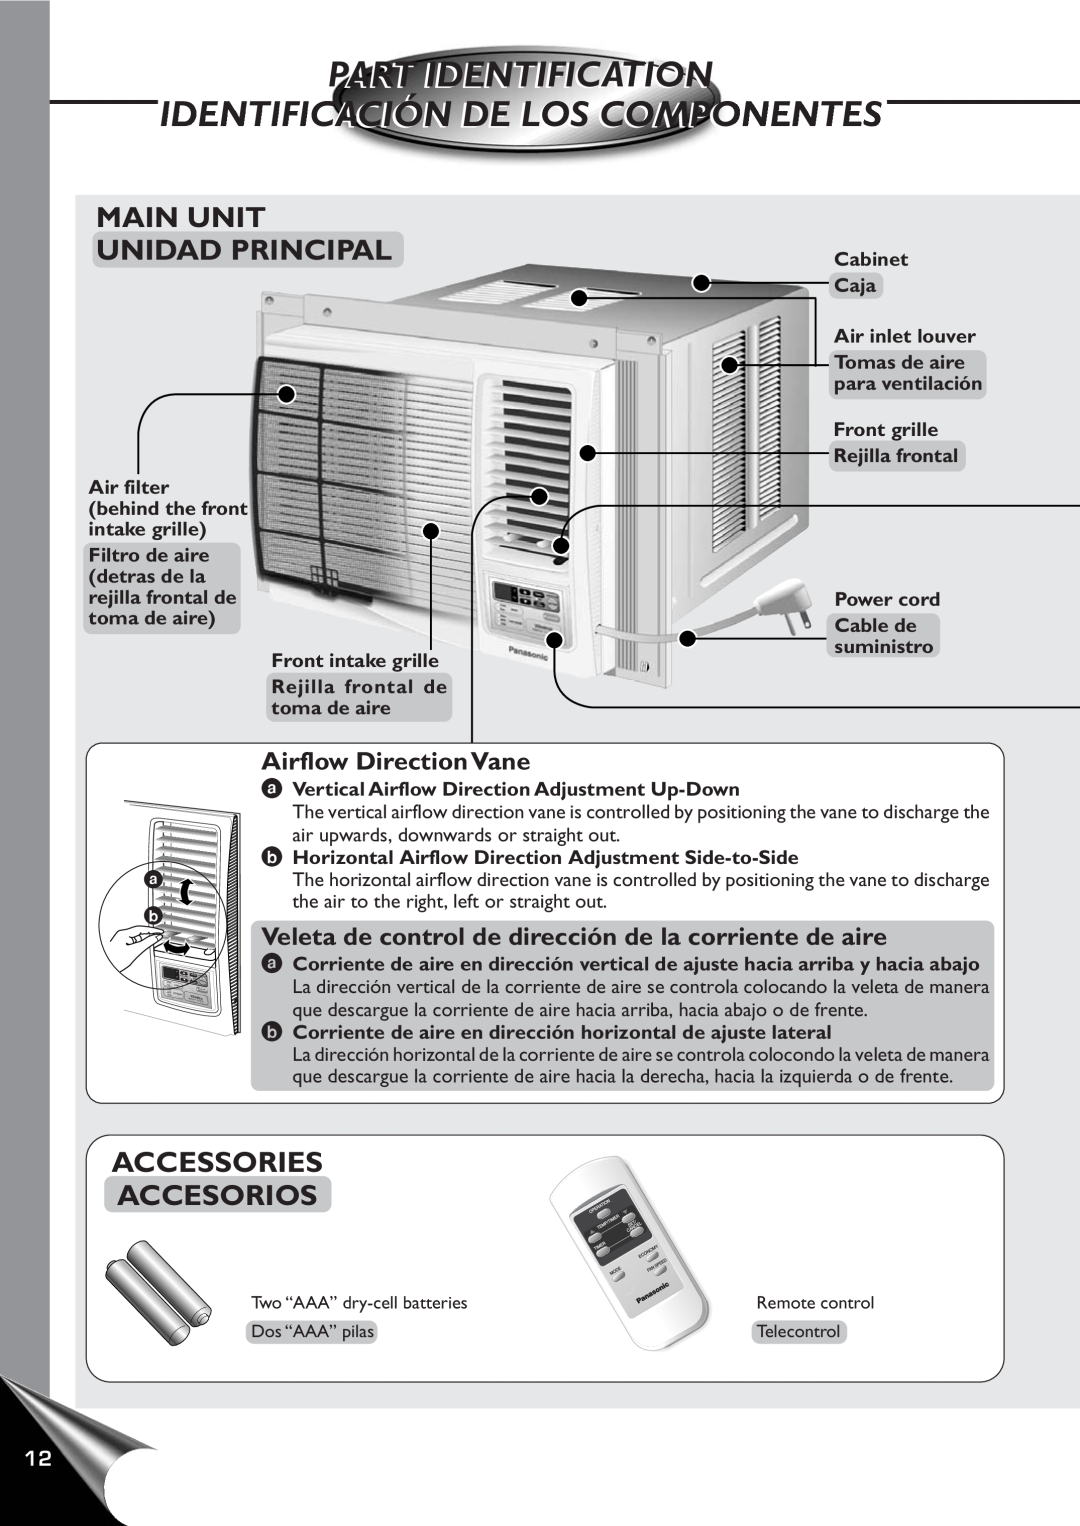 Panasonic CW-XC60YU, CW-XC80YU manual Part Identification, Identificación De Los Componentes, Main Unit Unidad Principal 